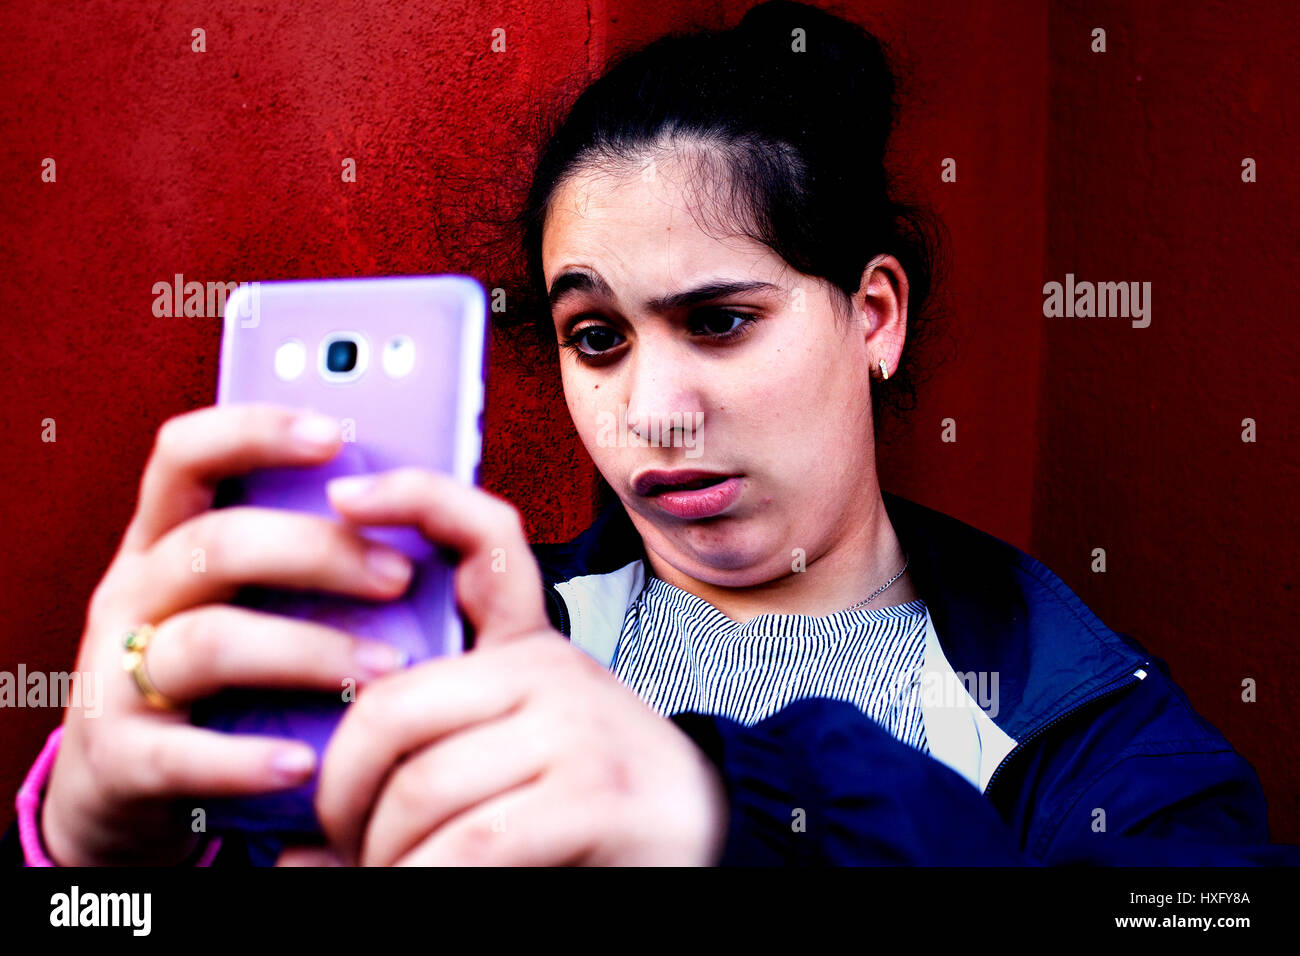 Spanische Teenager unter Selfies, Barcelona, Spanien. Stockfoto